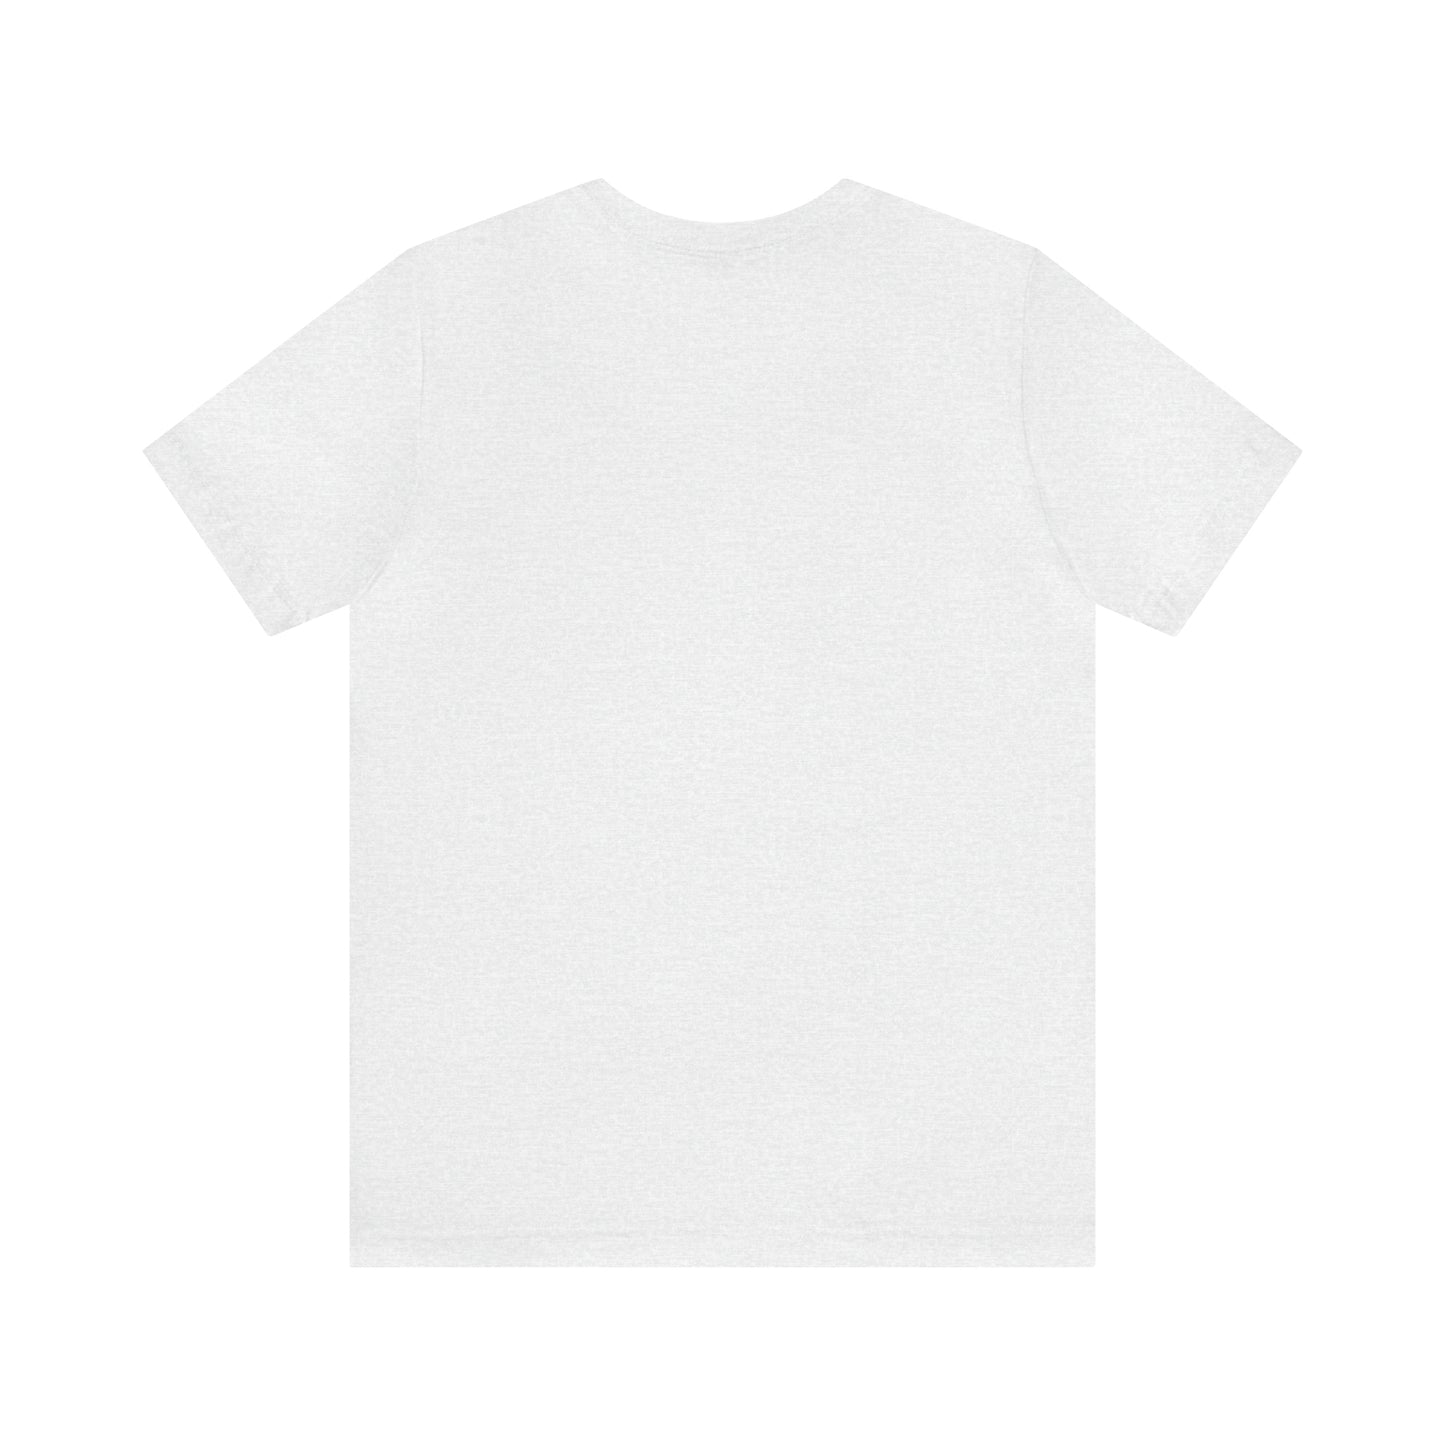 Pembroke, Mass Pickleball Short Sleeve T-Shirt